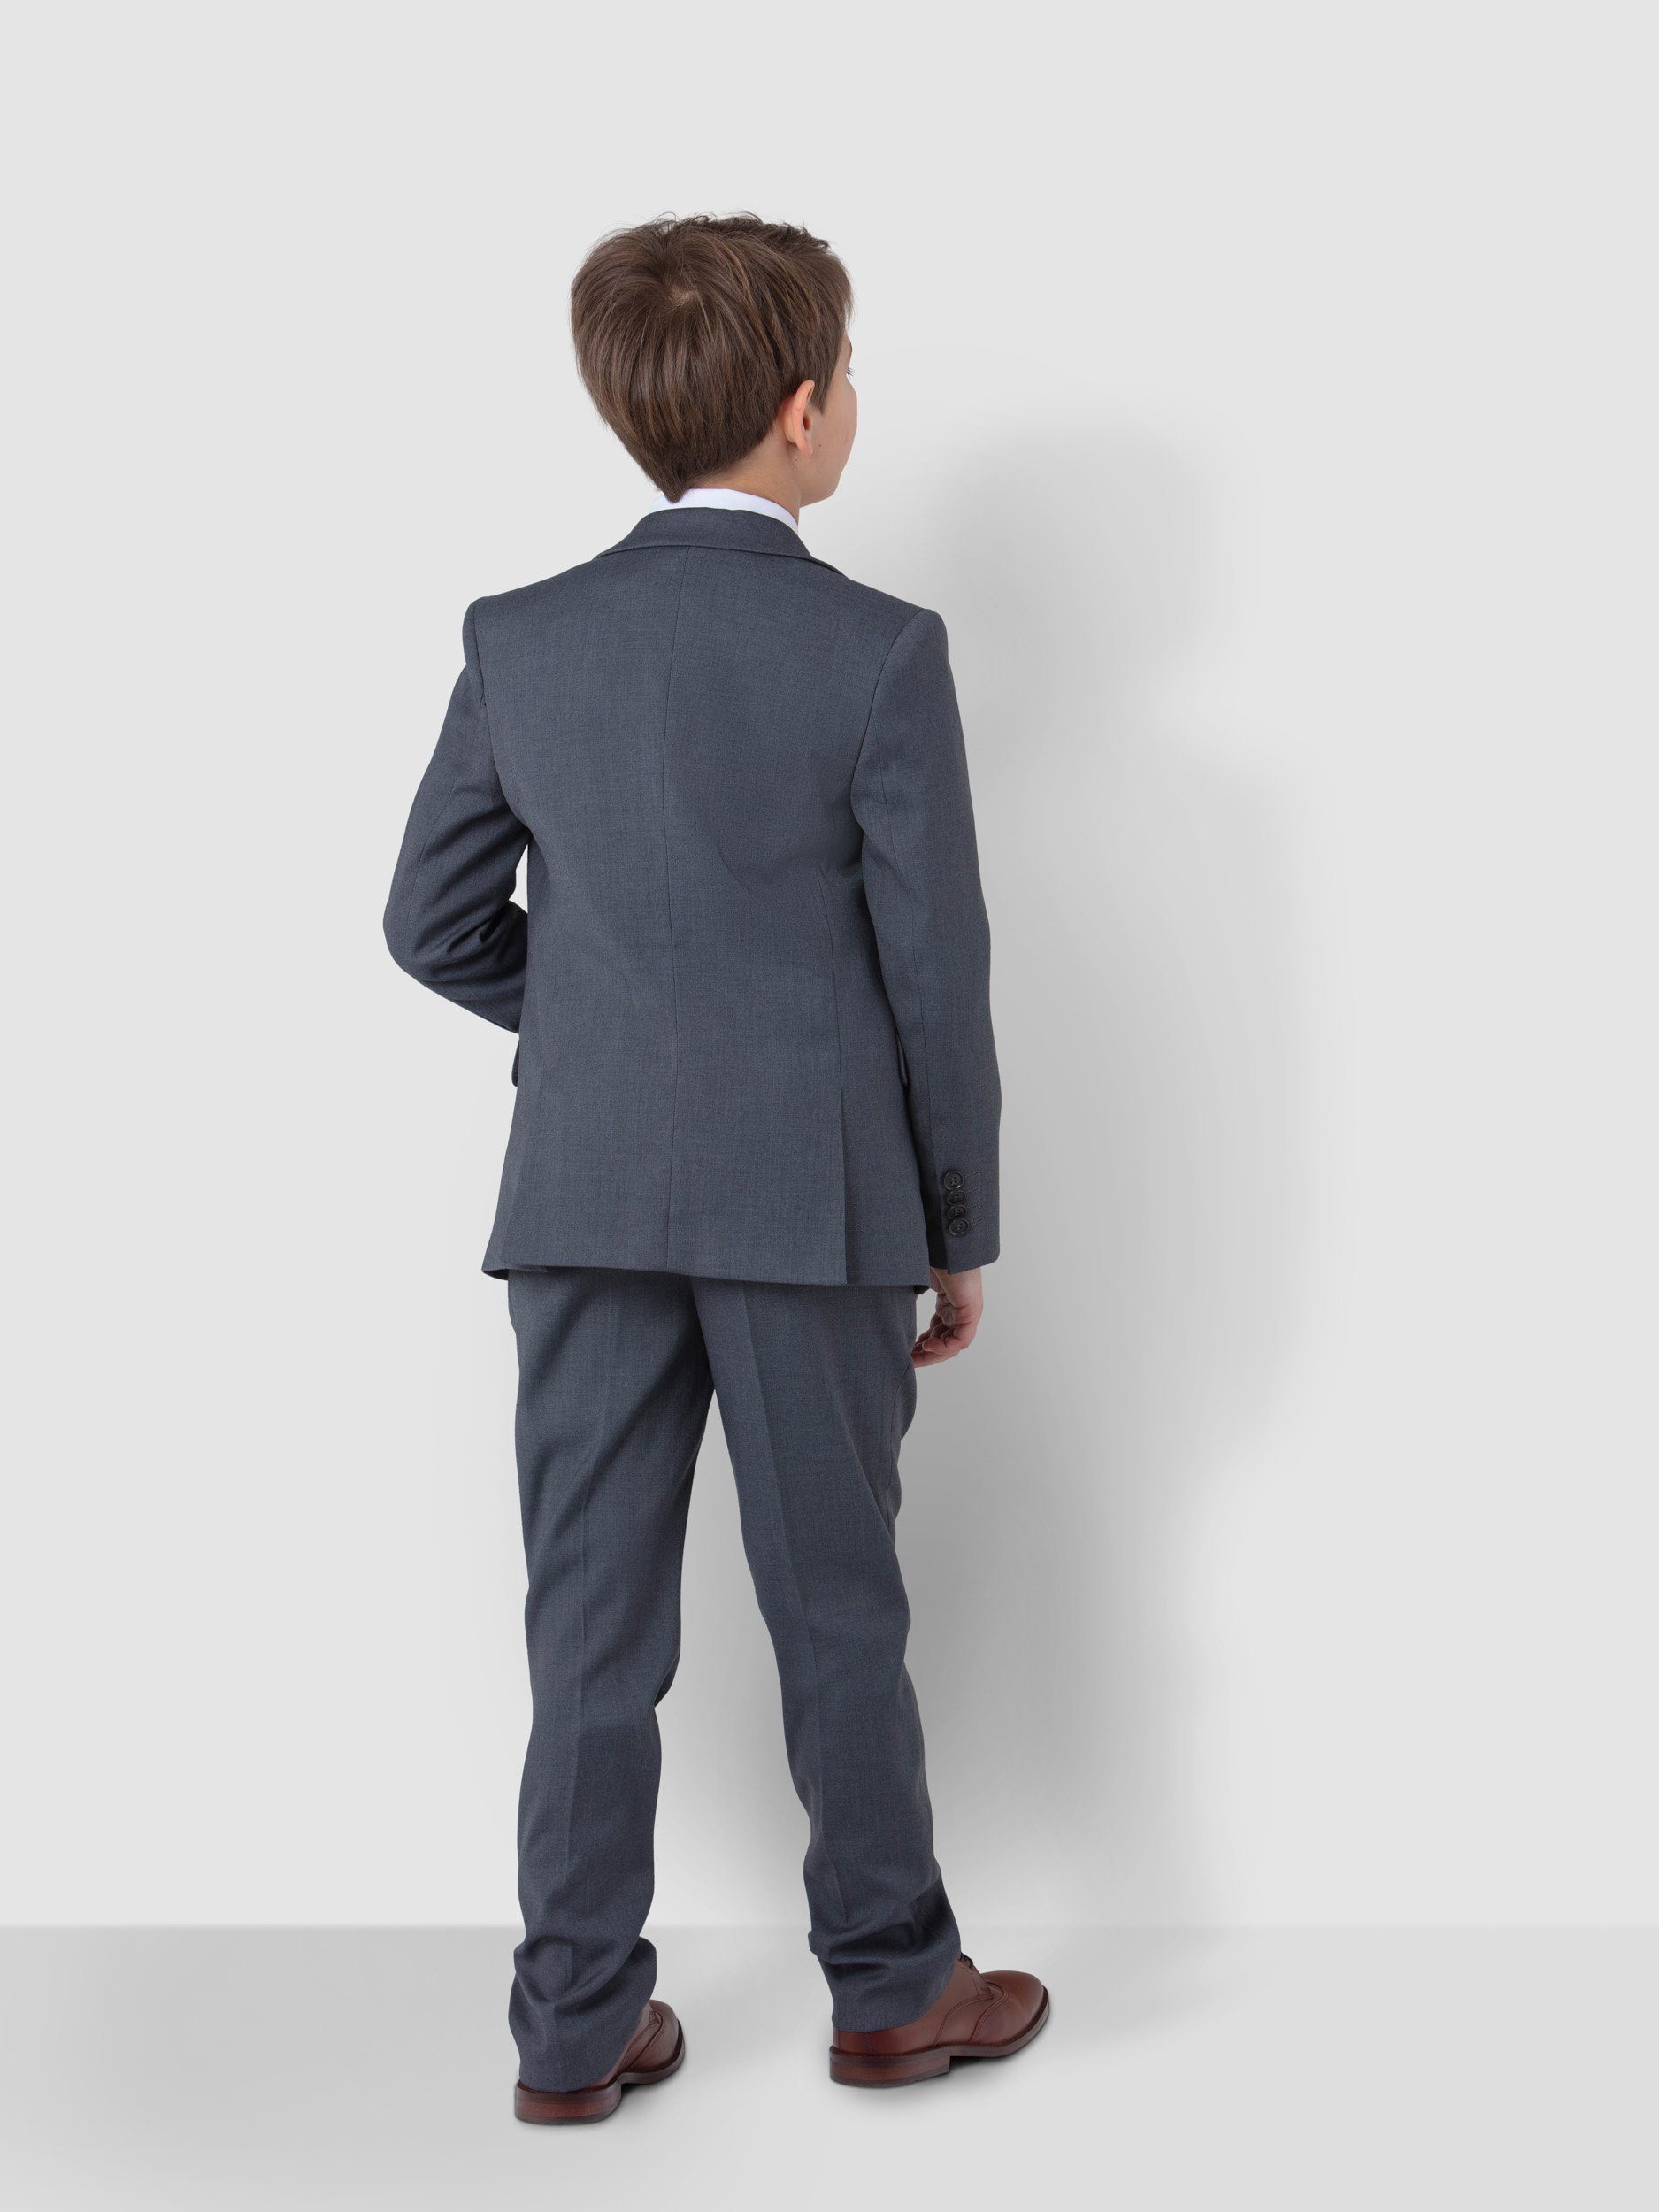 Melli-Trends Kinderanzug Luxuriöser Krawatte in Hose, Hemd, Grau 6-teilig, und (Sakko, Einstecktuch) Kommunionanzug Weste, Anzug elegant festlich, Jungen